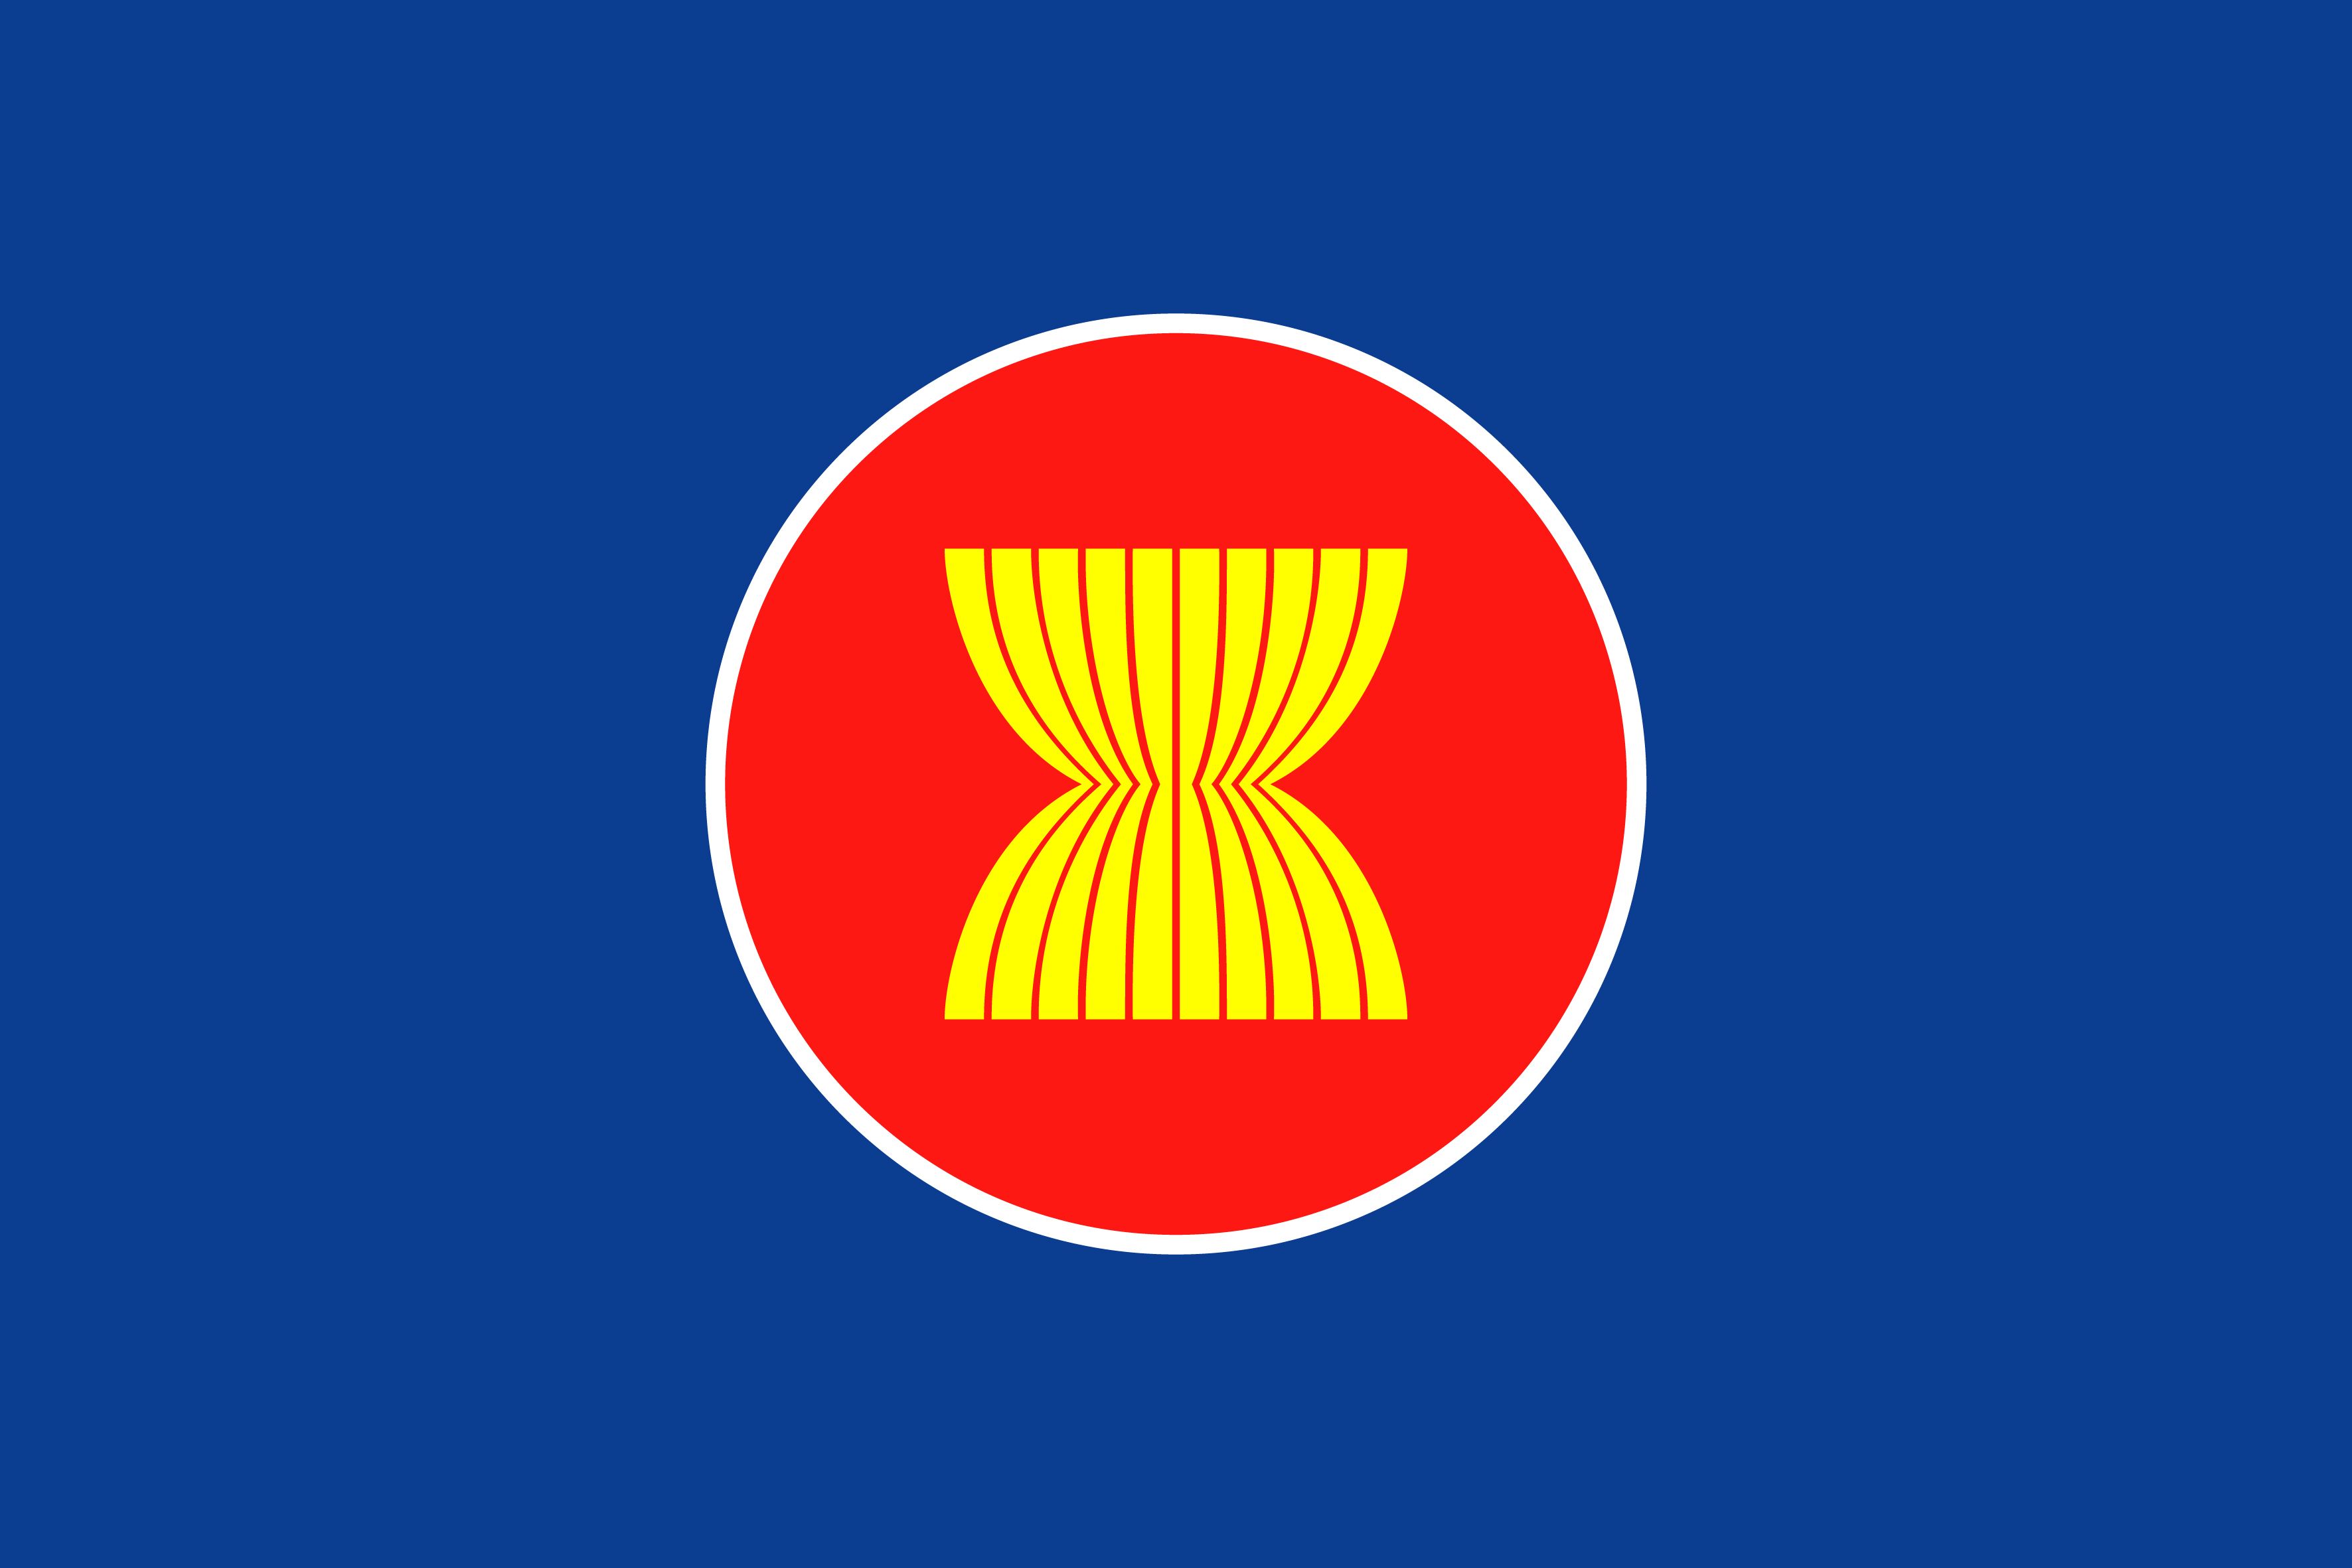 Ý nghĩa của lá cờ ASEAN không chỉ là biểu tượng của sự đoàn kết, mà còn phản ánh tinh thần của sự đoàn kết khu vực. Xem hình ảnh để cảm nhận sự quan trọng của lá cờ trong sự hội nhập và phát triển của ASEAN.